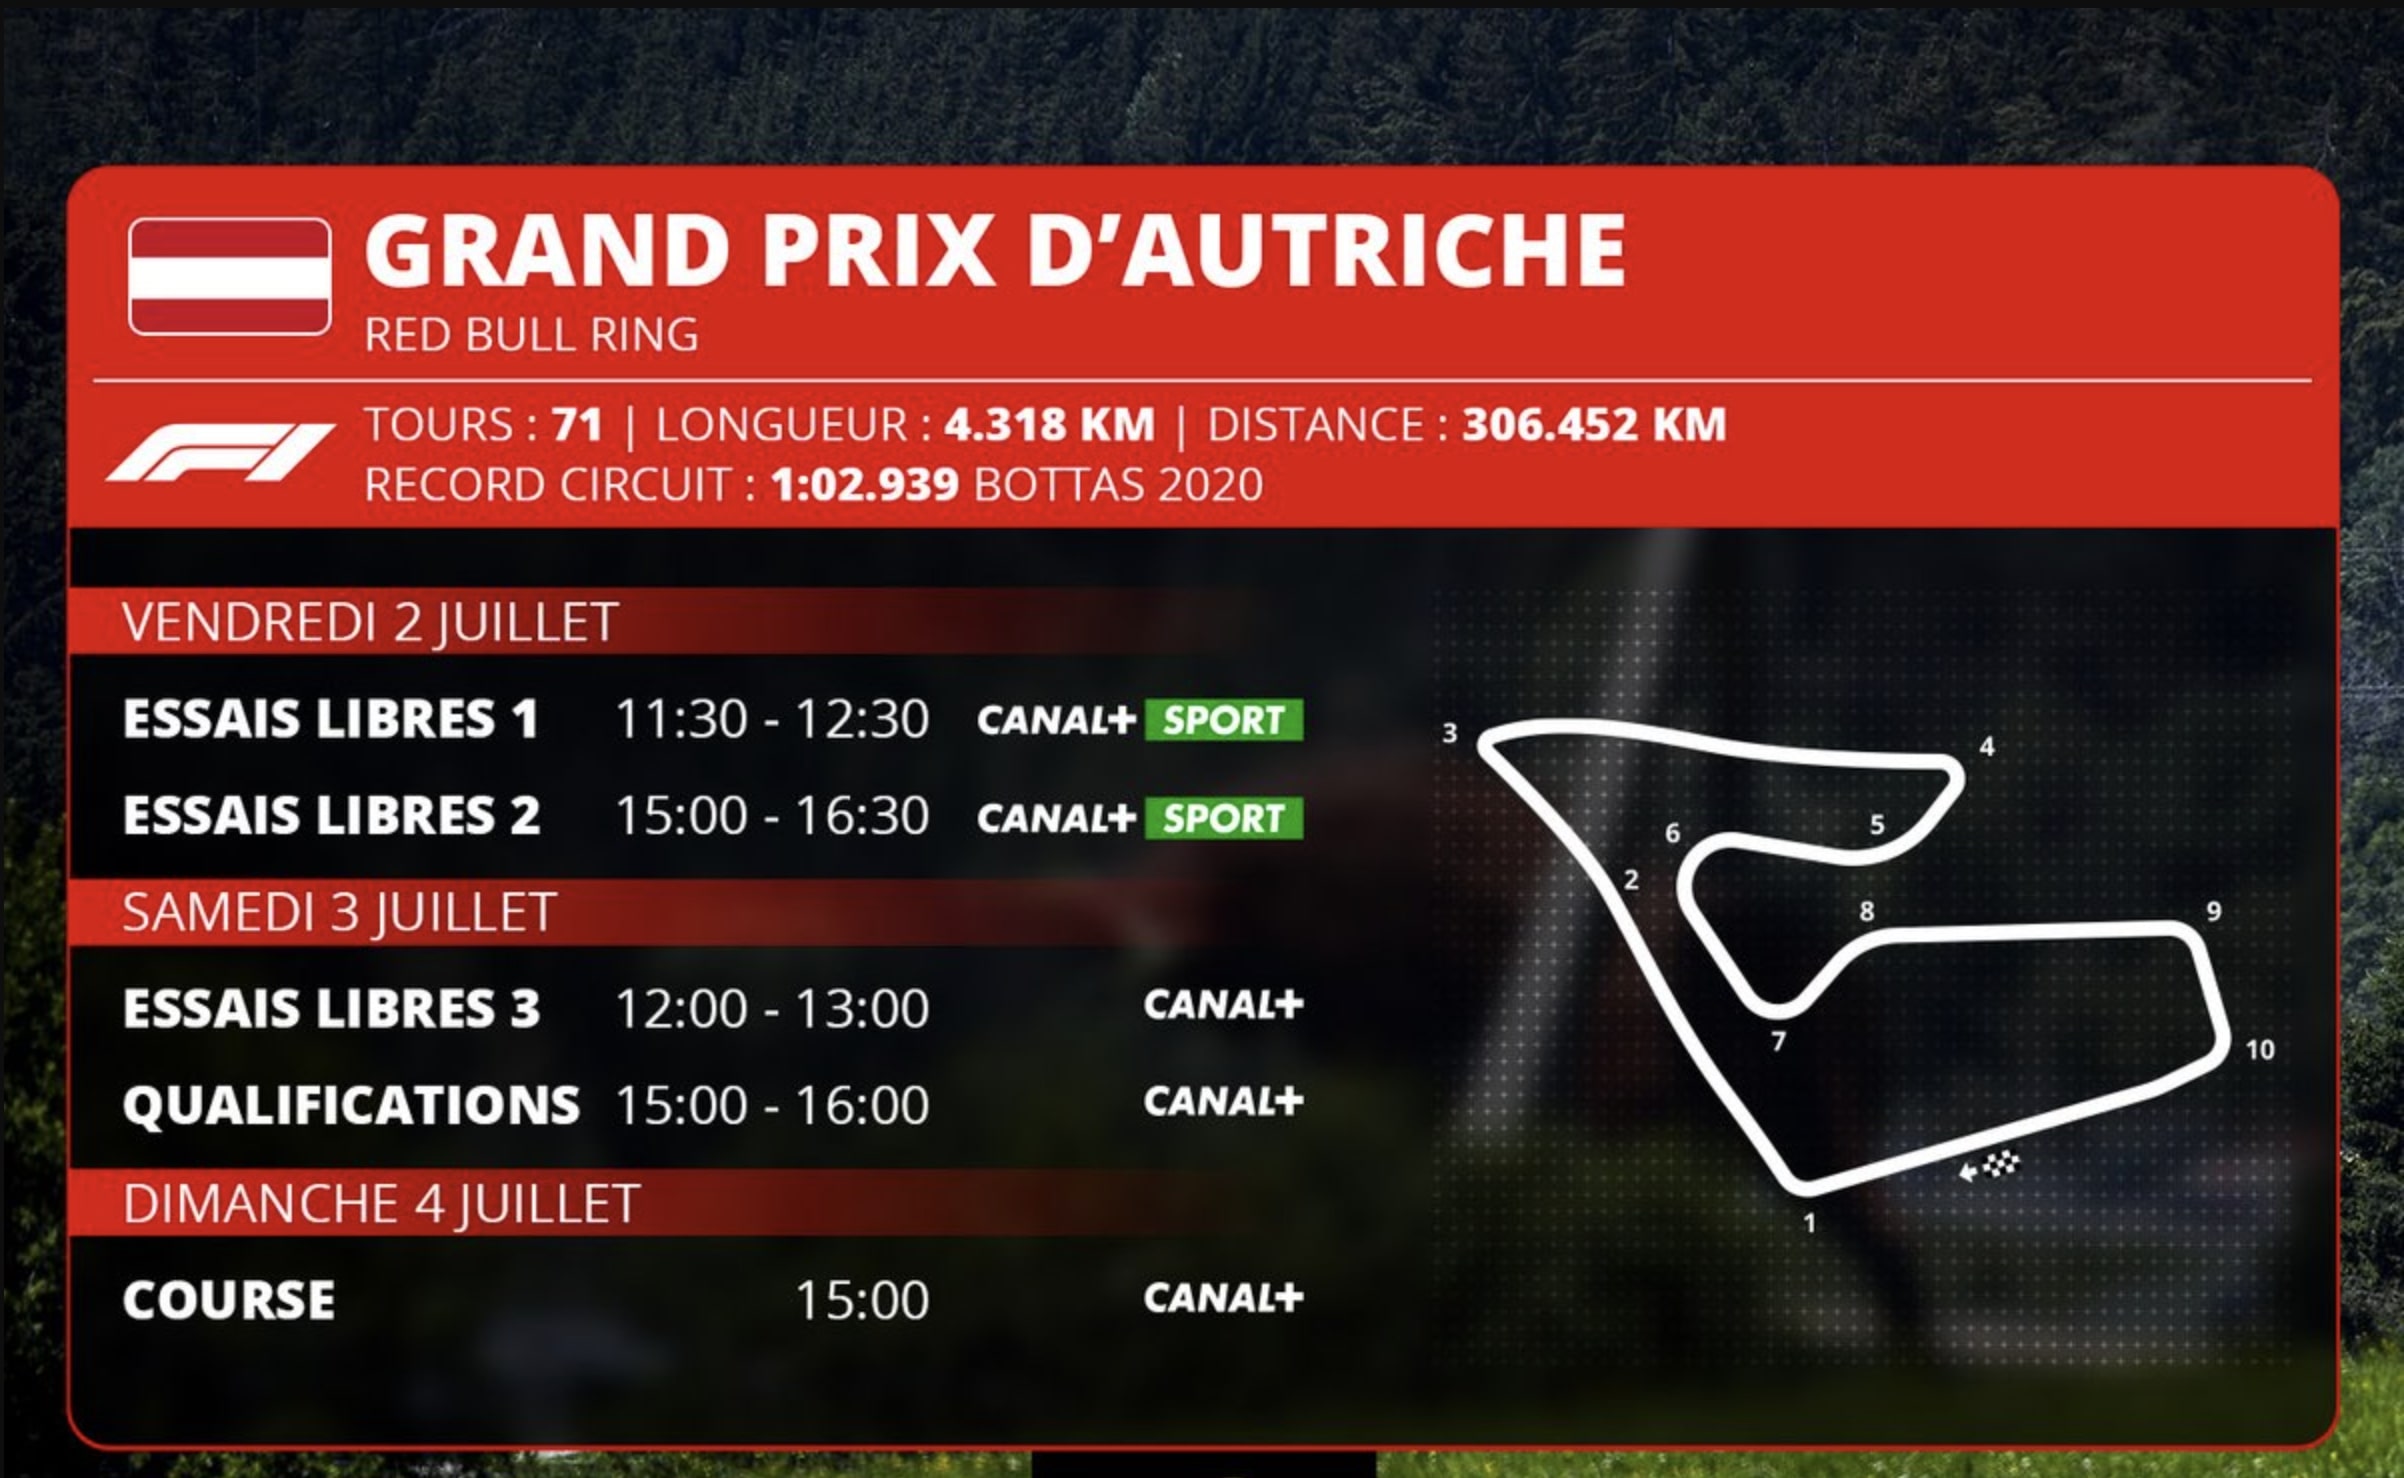 Tout ce qu’il faut savoir sur le Grand Prix d’Autriche de Formule 1 : horaires, circuit et diffusion TV